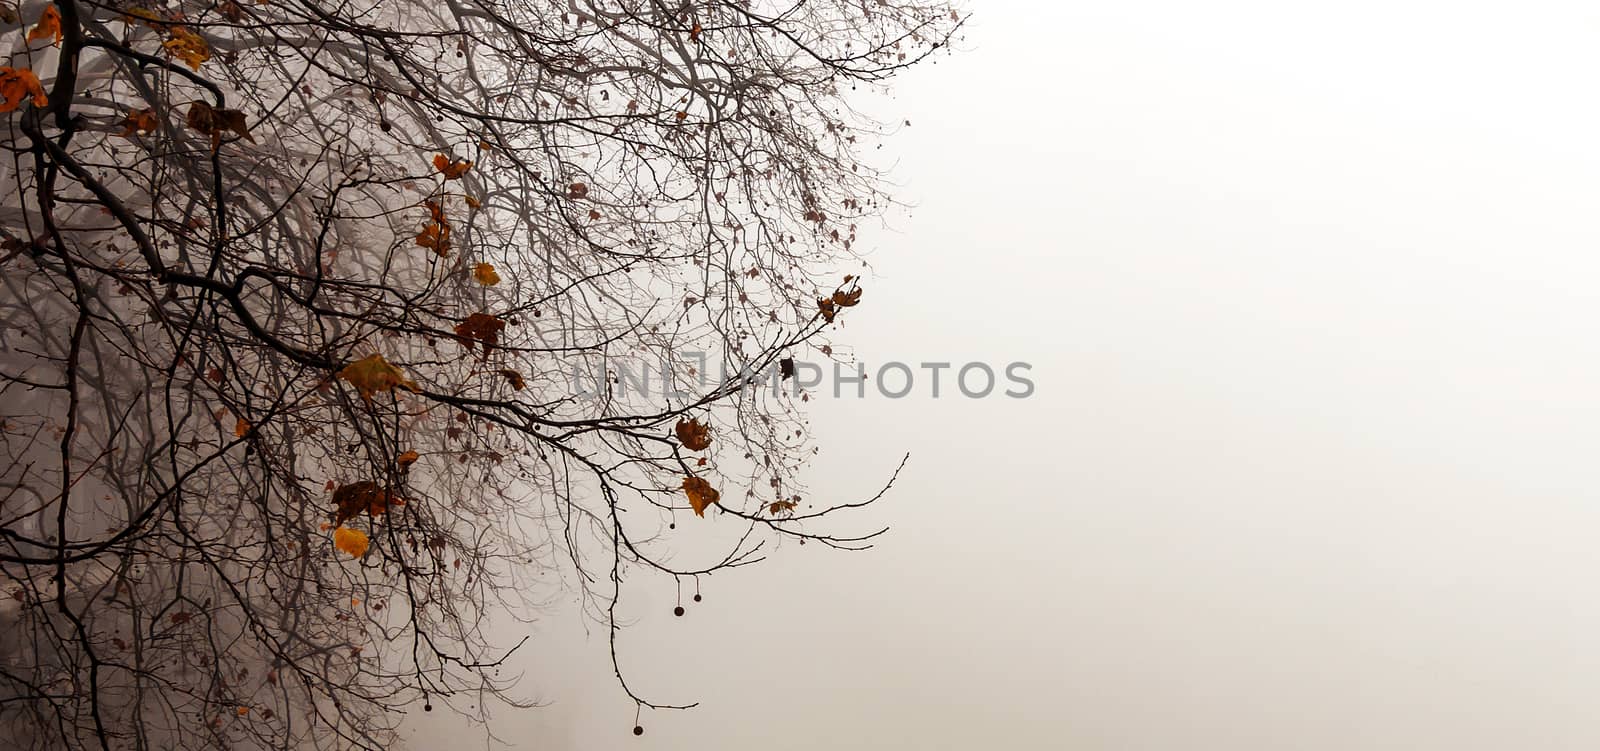 tree in the fog by rarrarorro